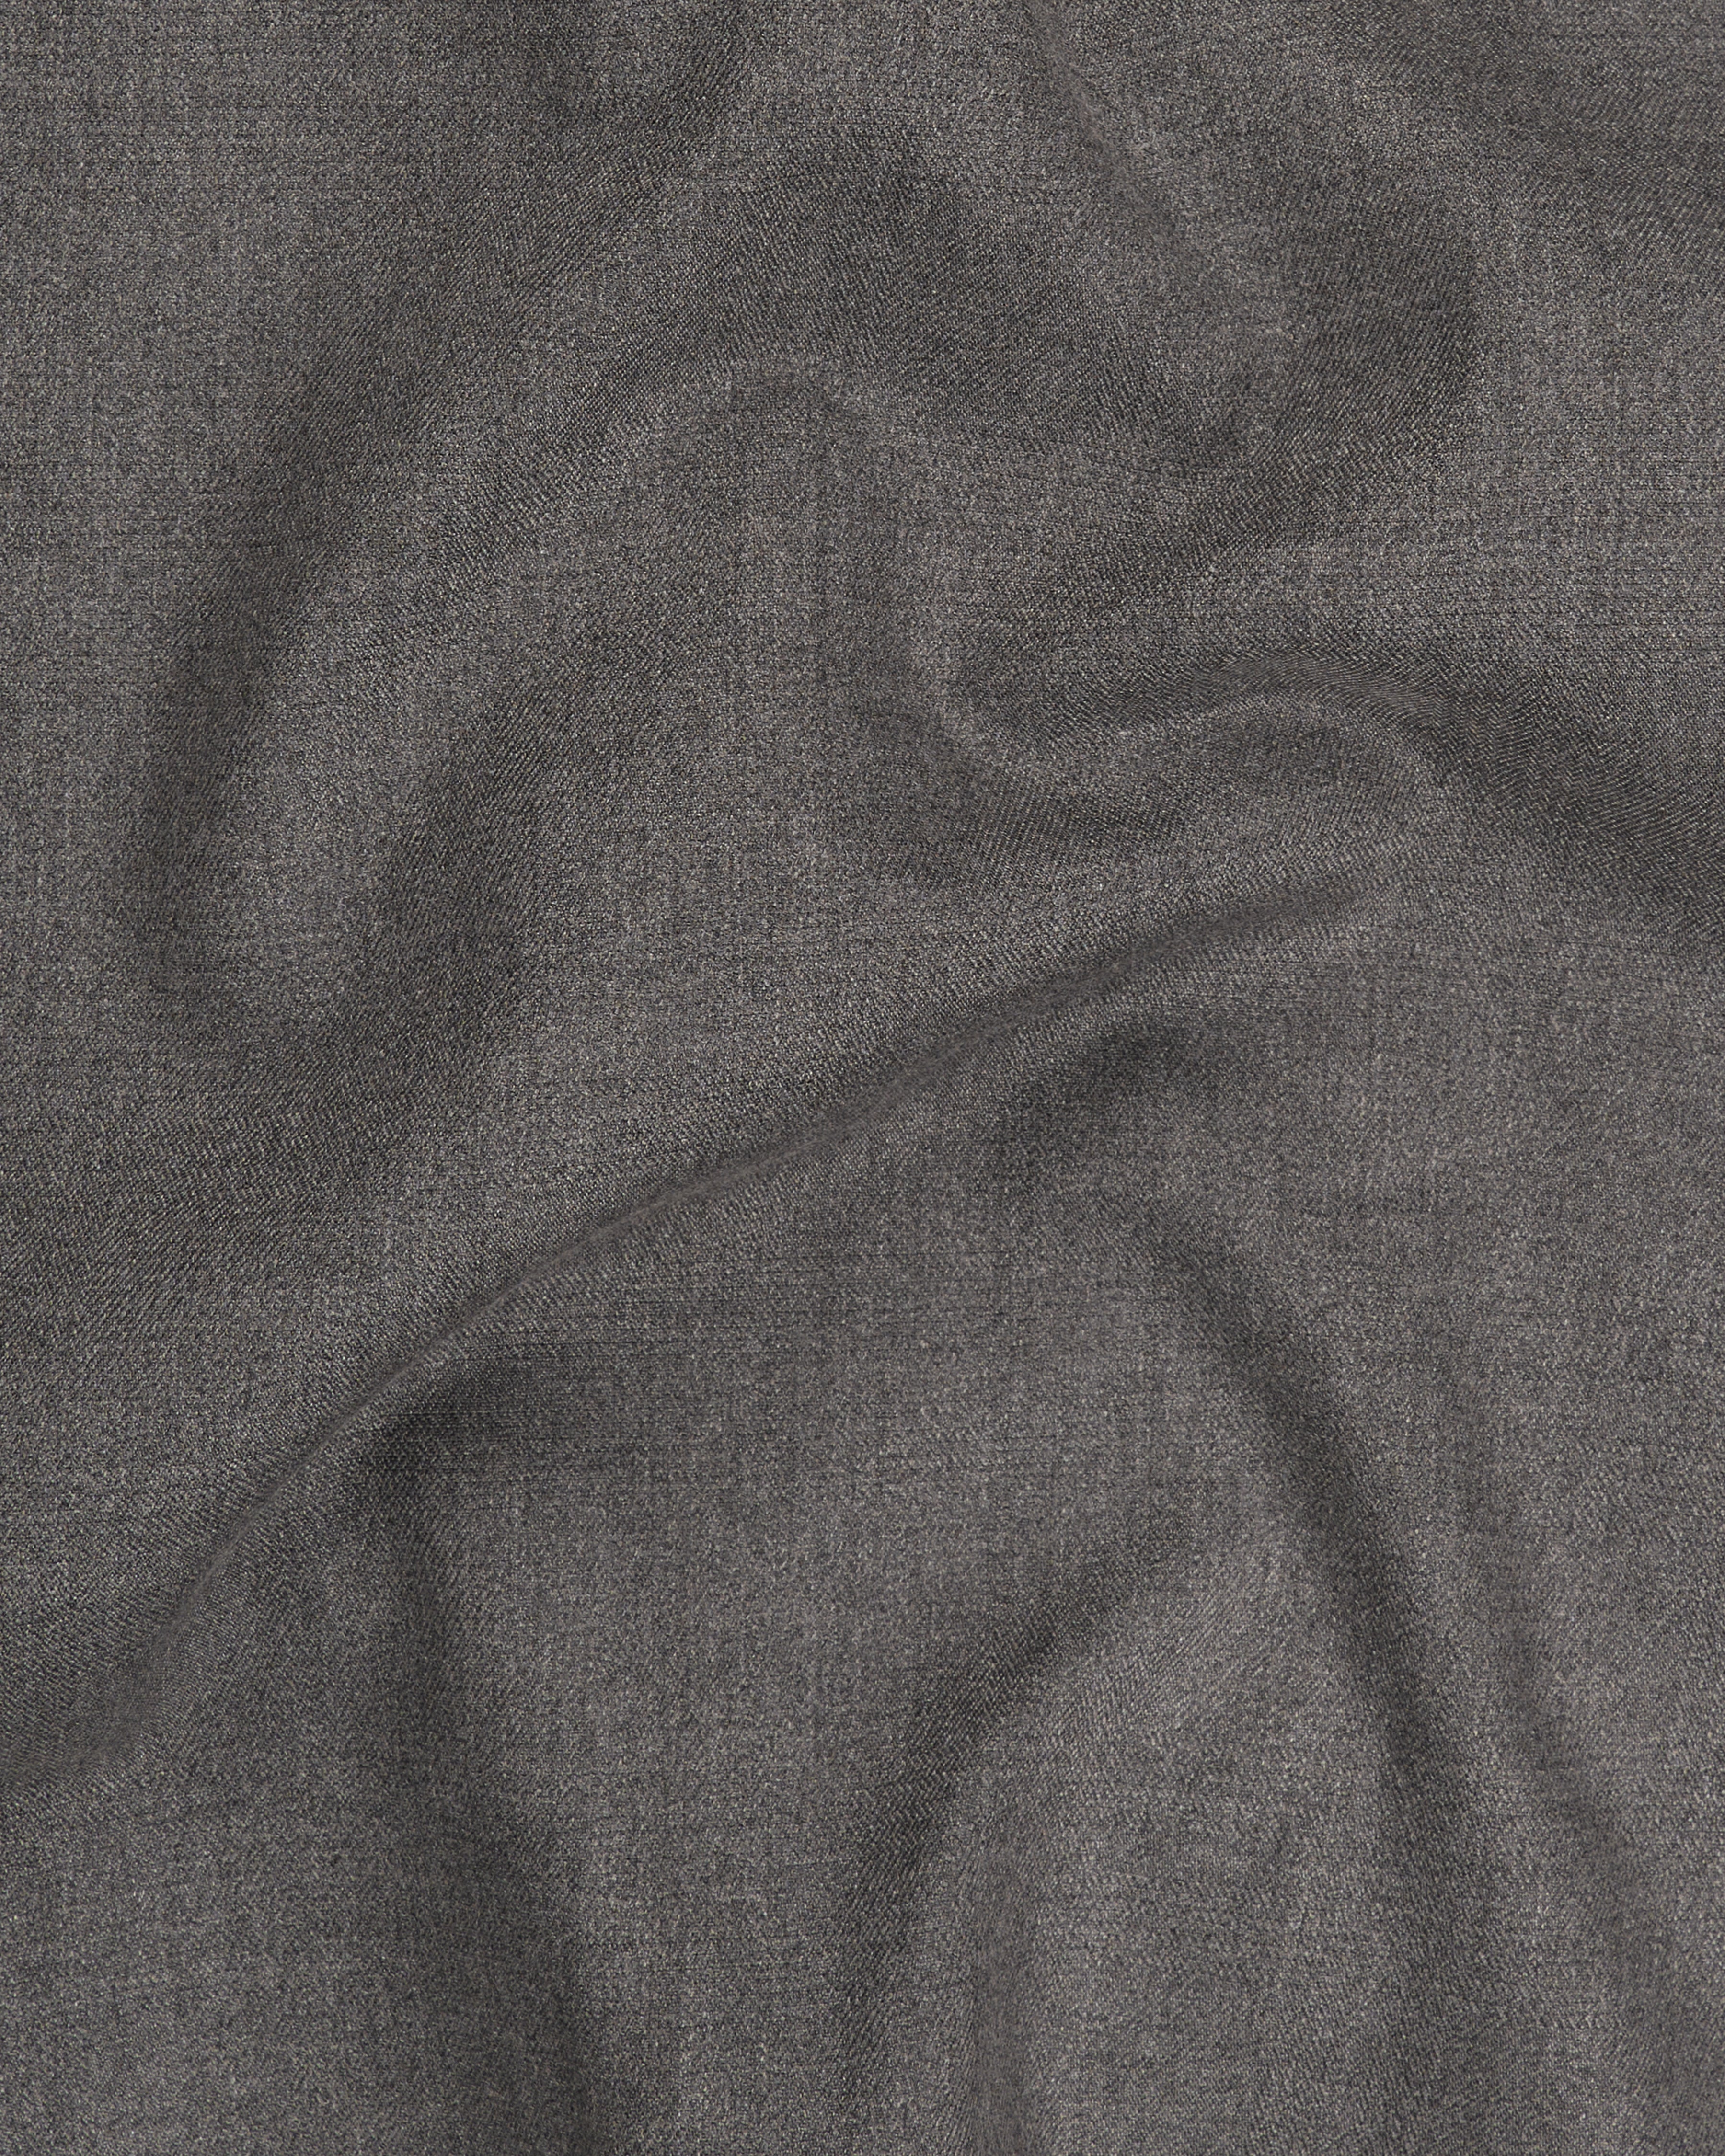 Tundora Grey Textured Pant T2276-28, T2276-30, T2276-32, T2276-34, T2276-36, T2276-38, T2276-40, T2276-42, T2276-44